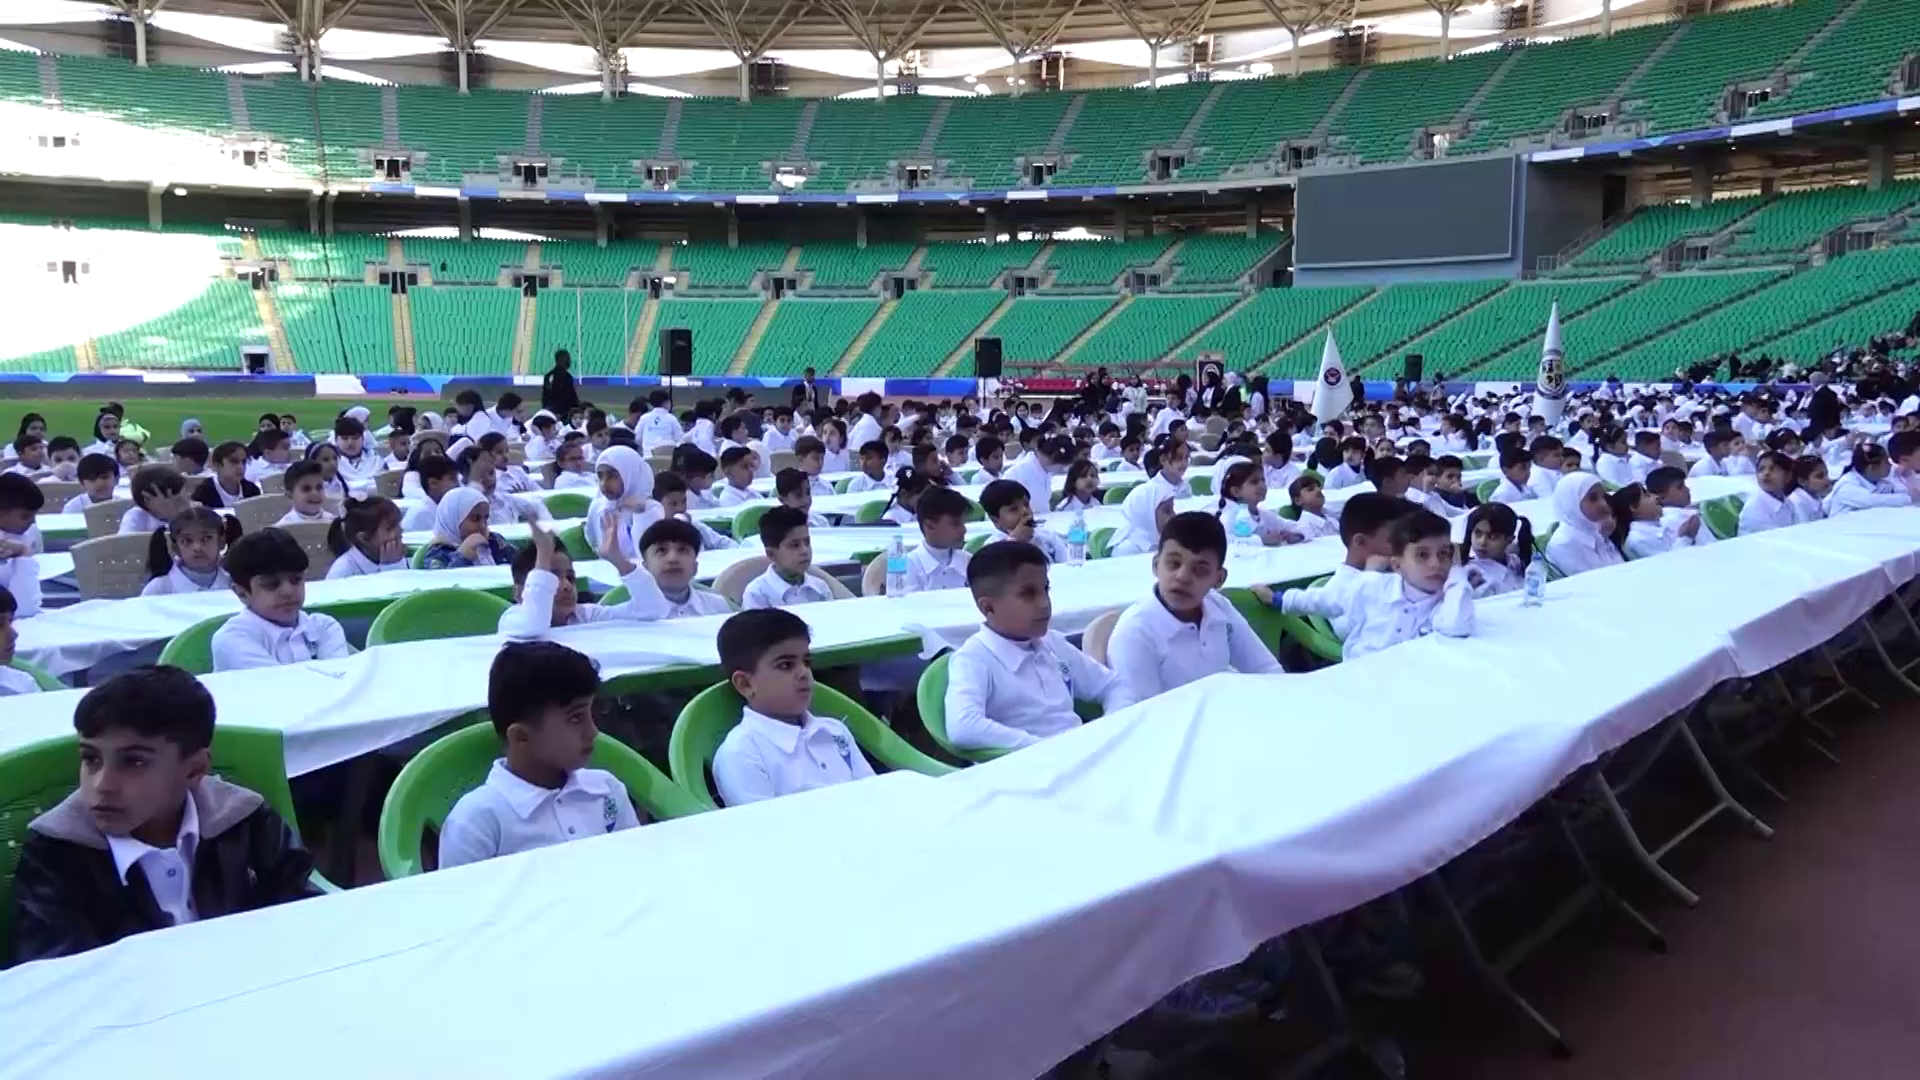 فيديو: المدينة الرياضية في البصرة صارت مدينة رياضيات.. 1600 طالب لسباق الحساب